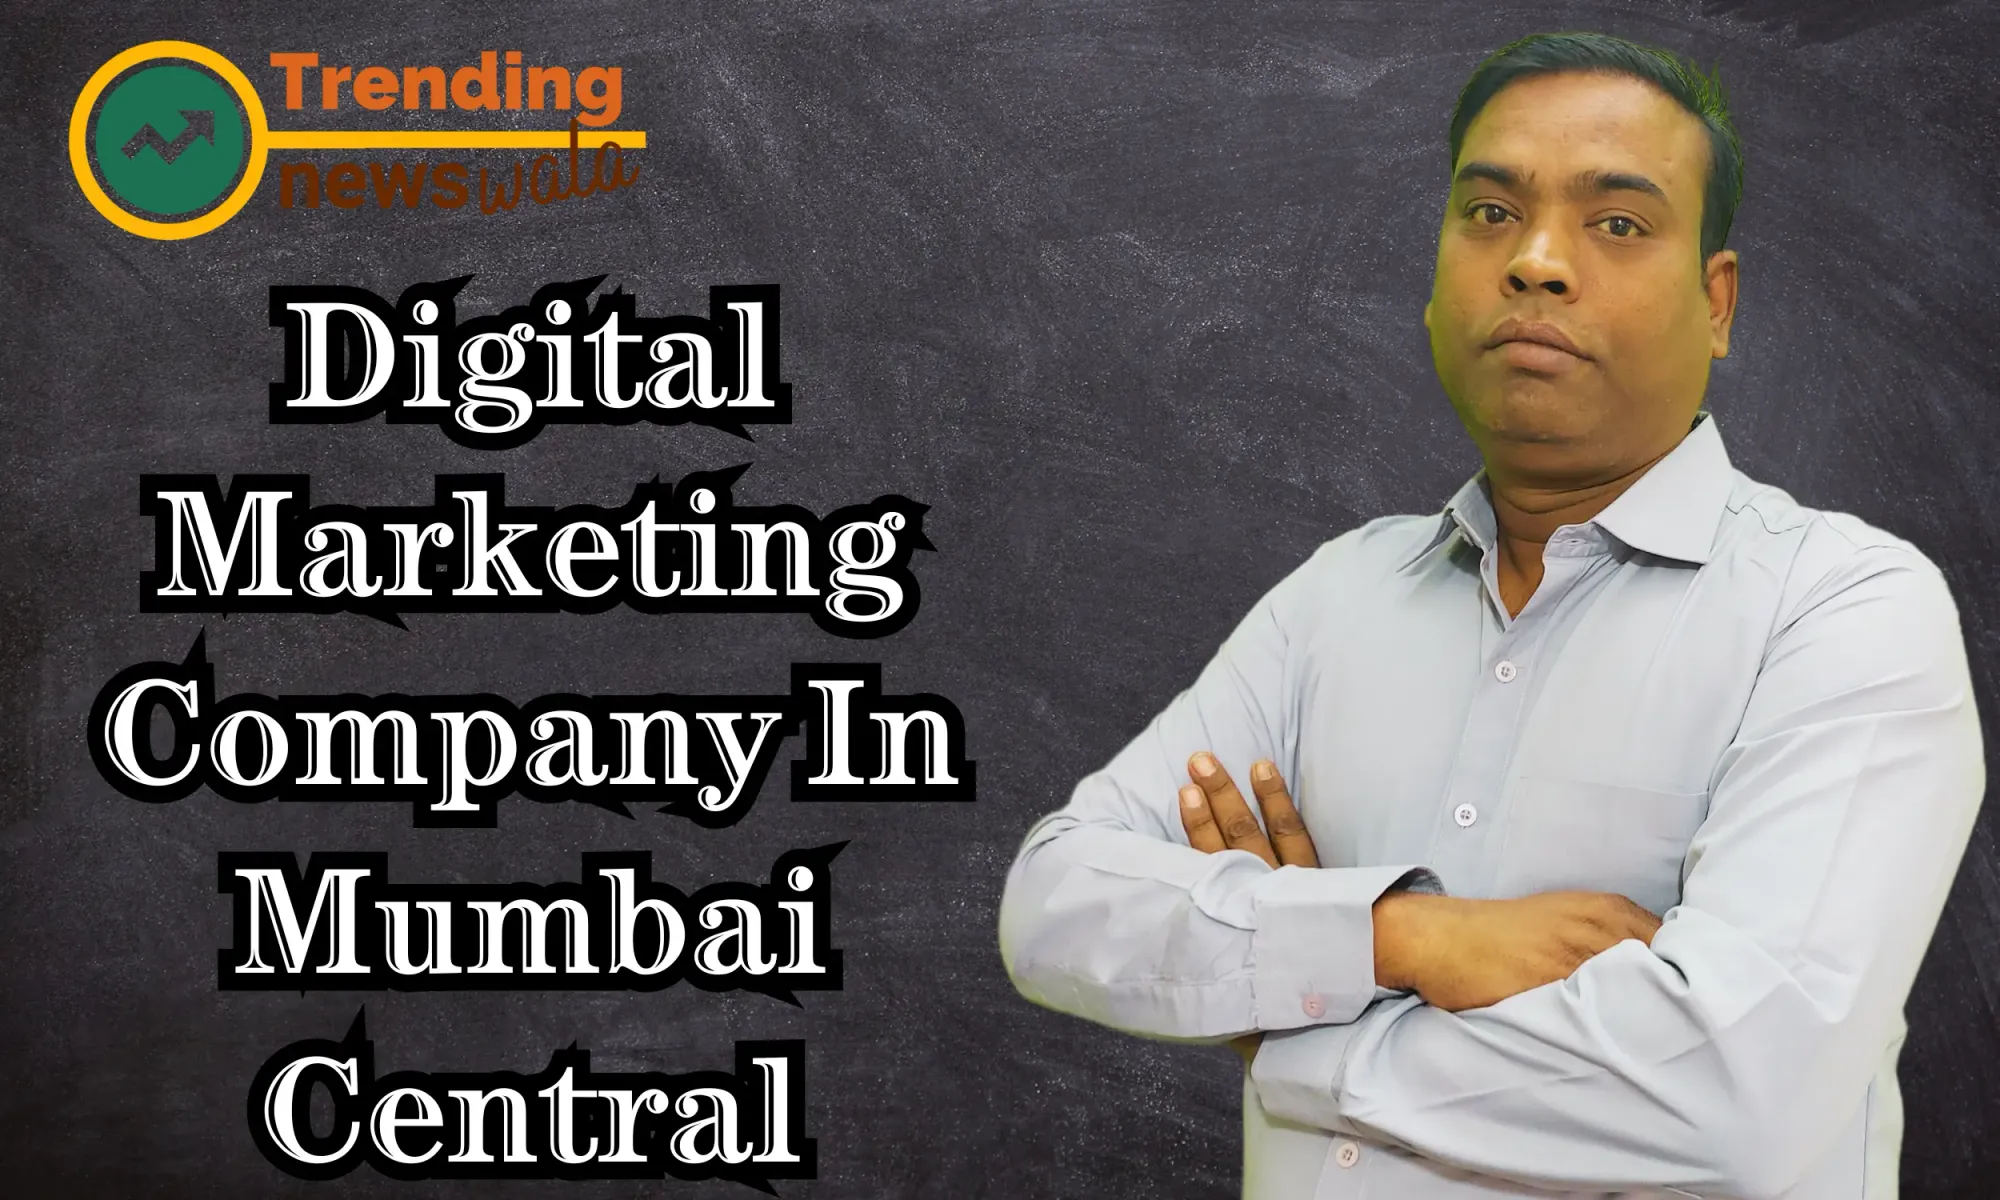 Digital Marketing Company In Mumbai Central